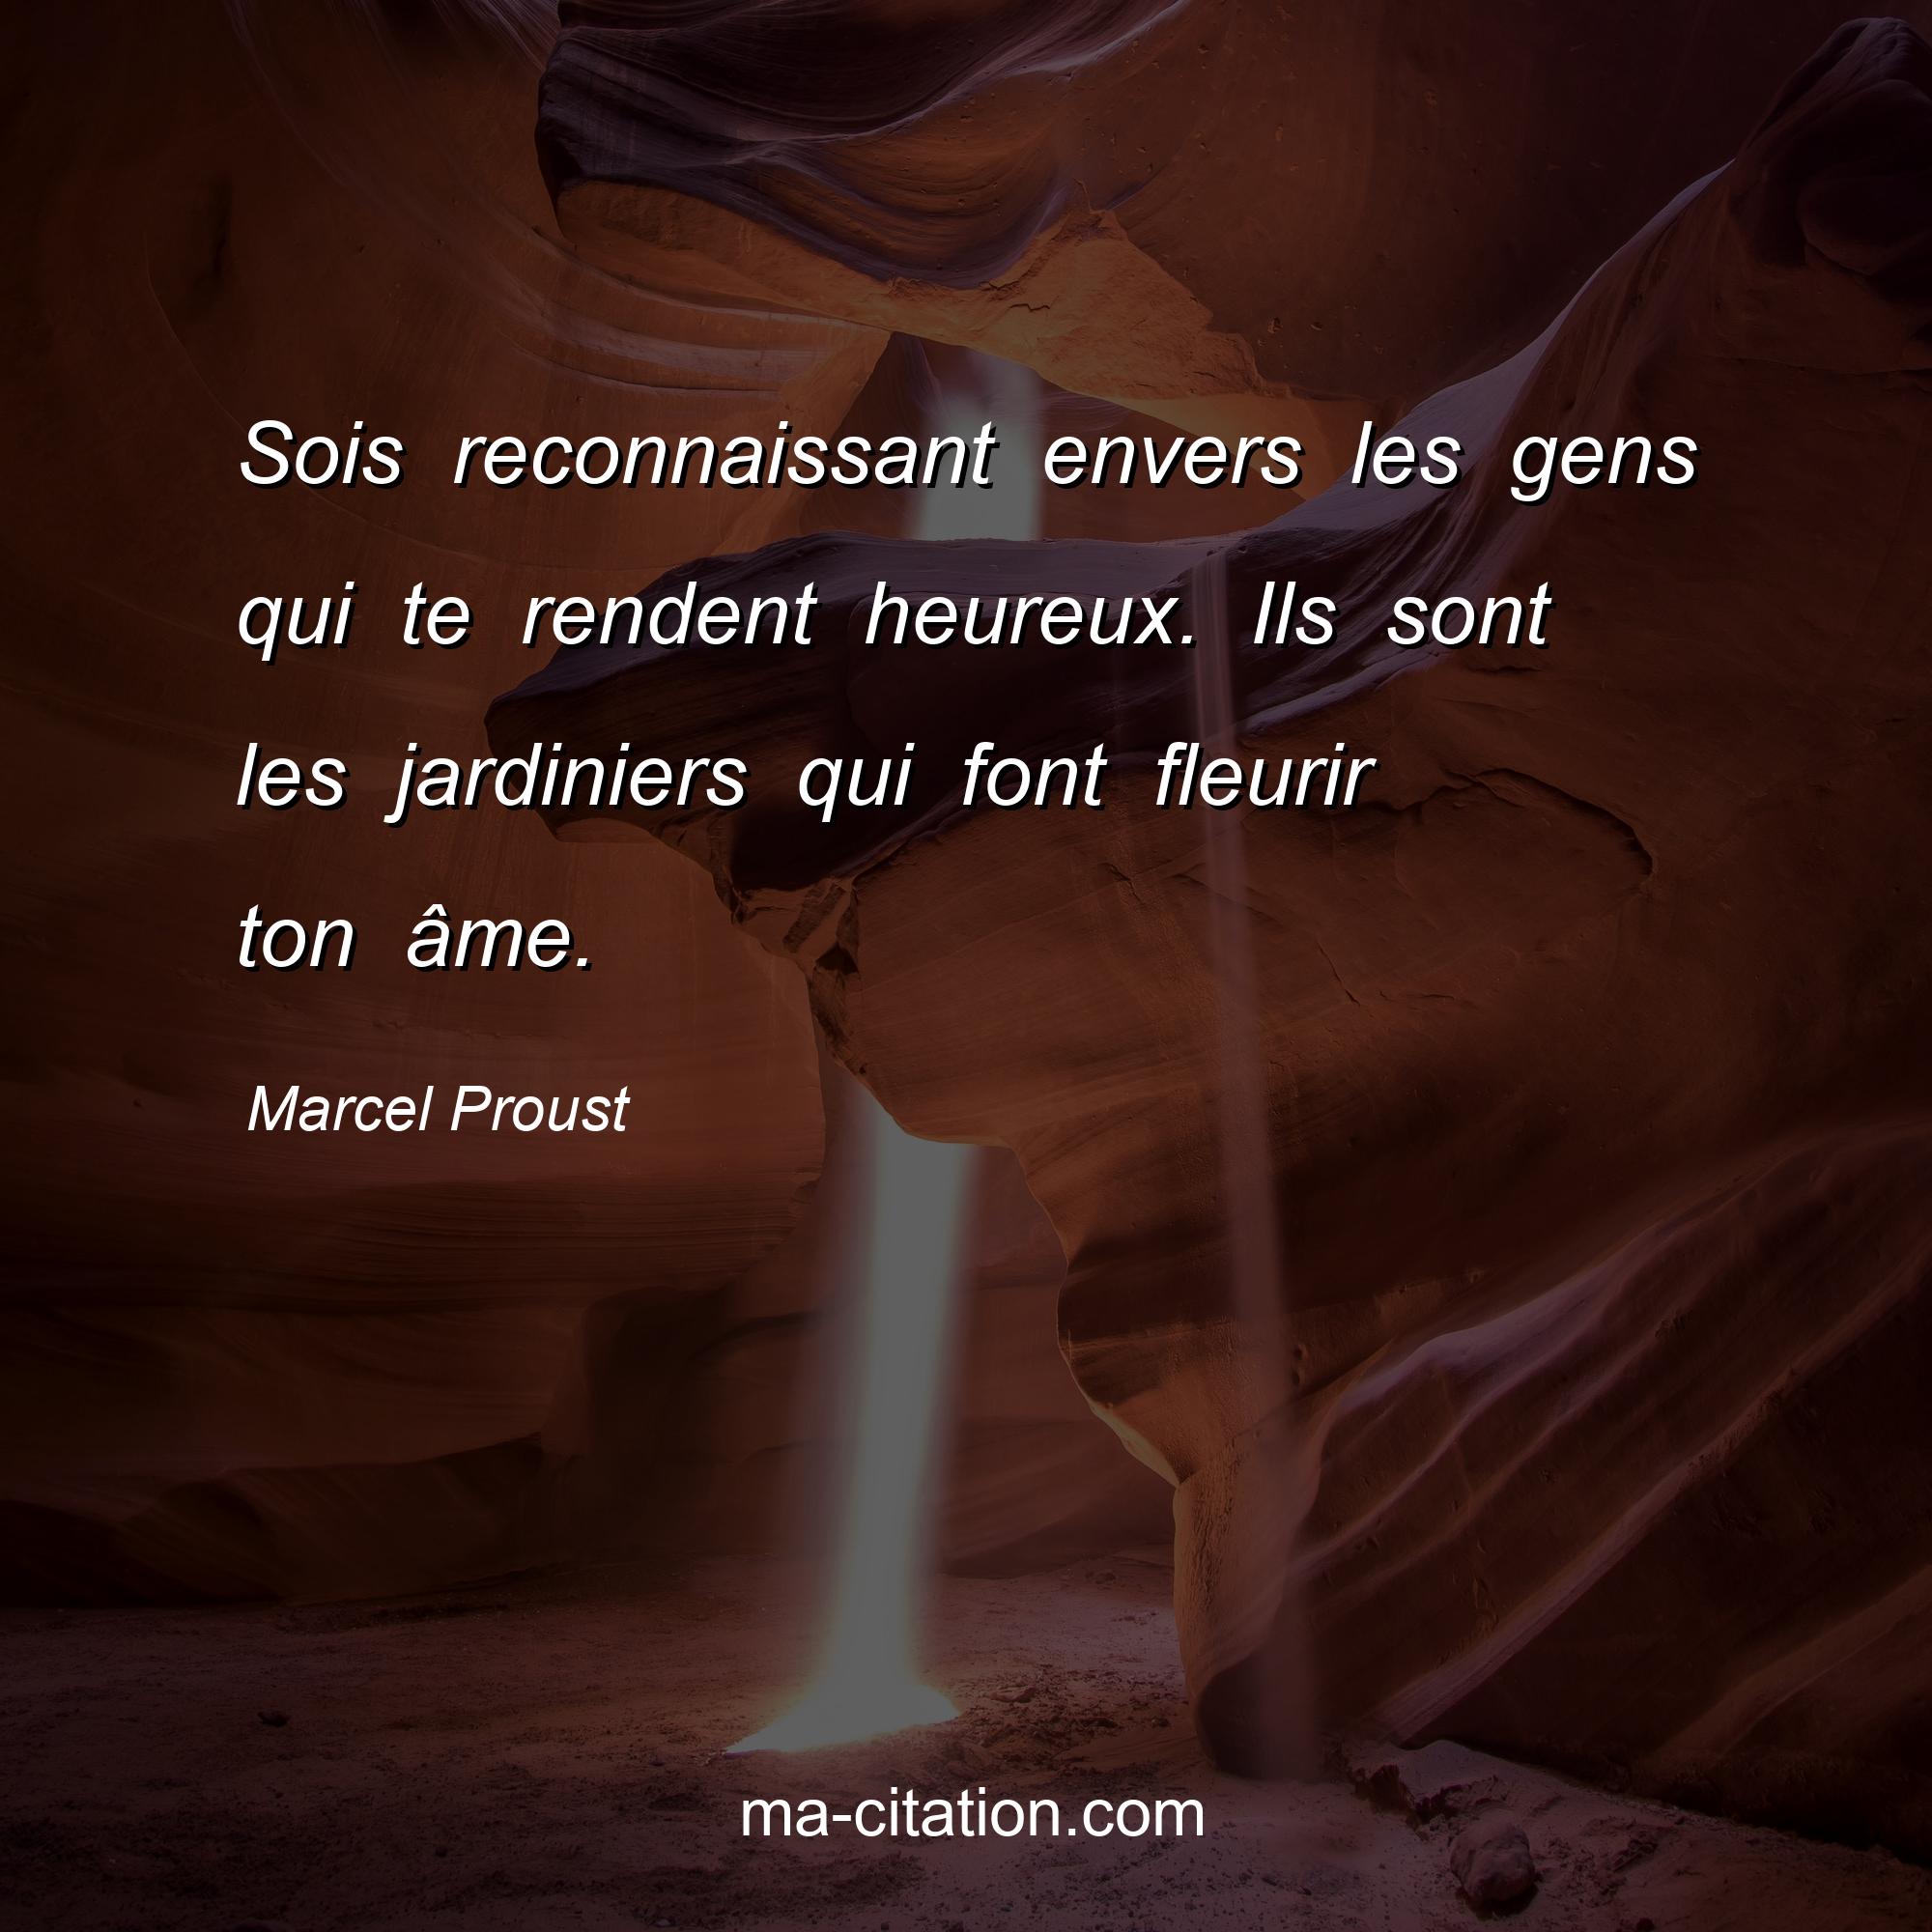 Marcel Proust : Sois reconnaissant envers les gens qui te rendent heureux. Ils sont les jardiniers qui font fleurir ton âme.